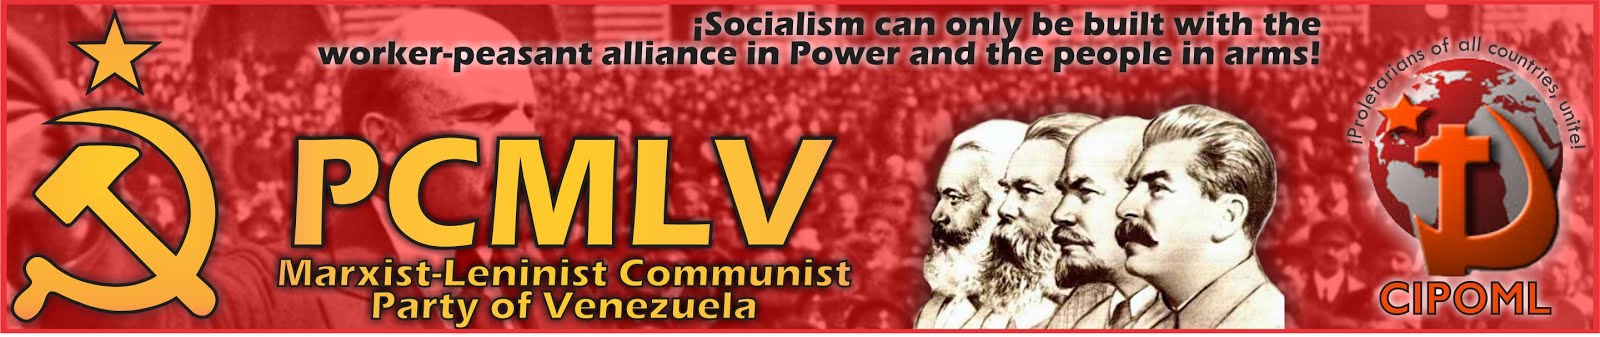 Marxist-Leninist Communist Party of Venezuela (PCMLV)